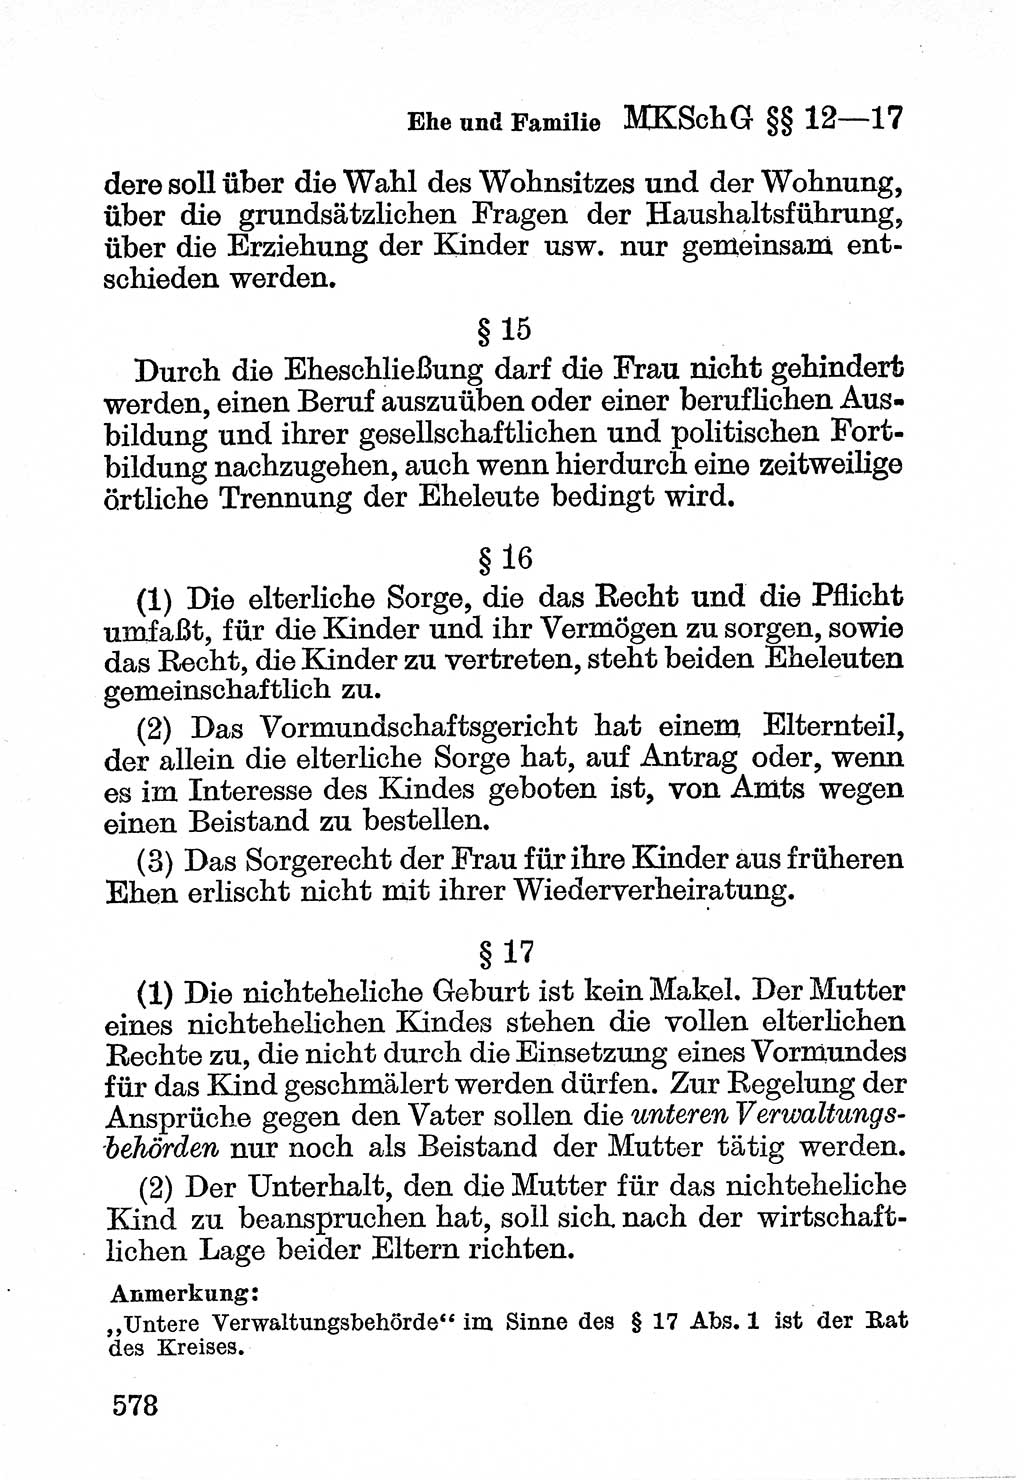 Bürgerliches Gesetzbuch (BGB) nebst wichtigen Nebengesetzen [Deutsche Demokratische Republik (DDR)] 1956, Seite 578 (BGB Nebenges. DDR 1956, S. 578)